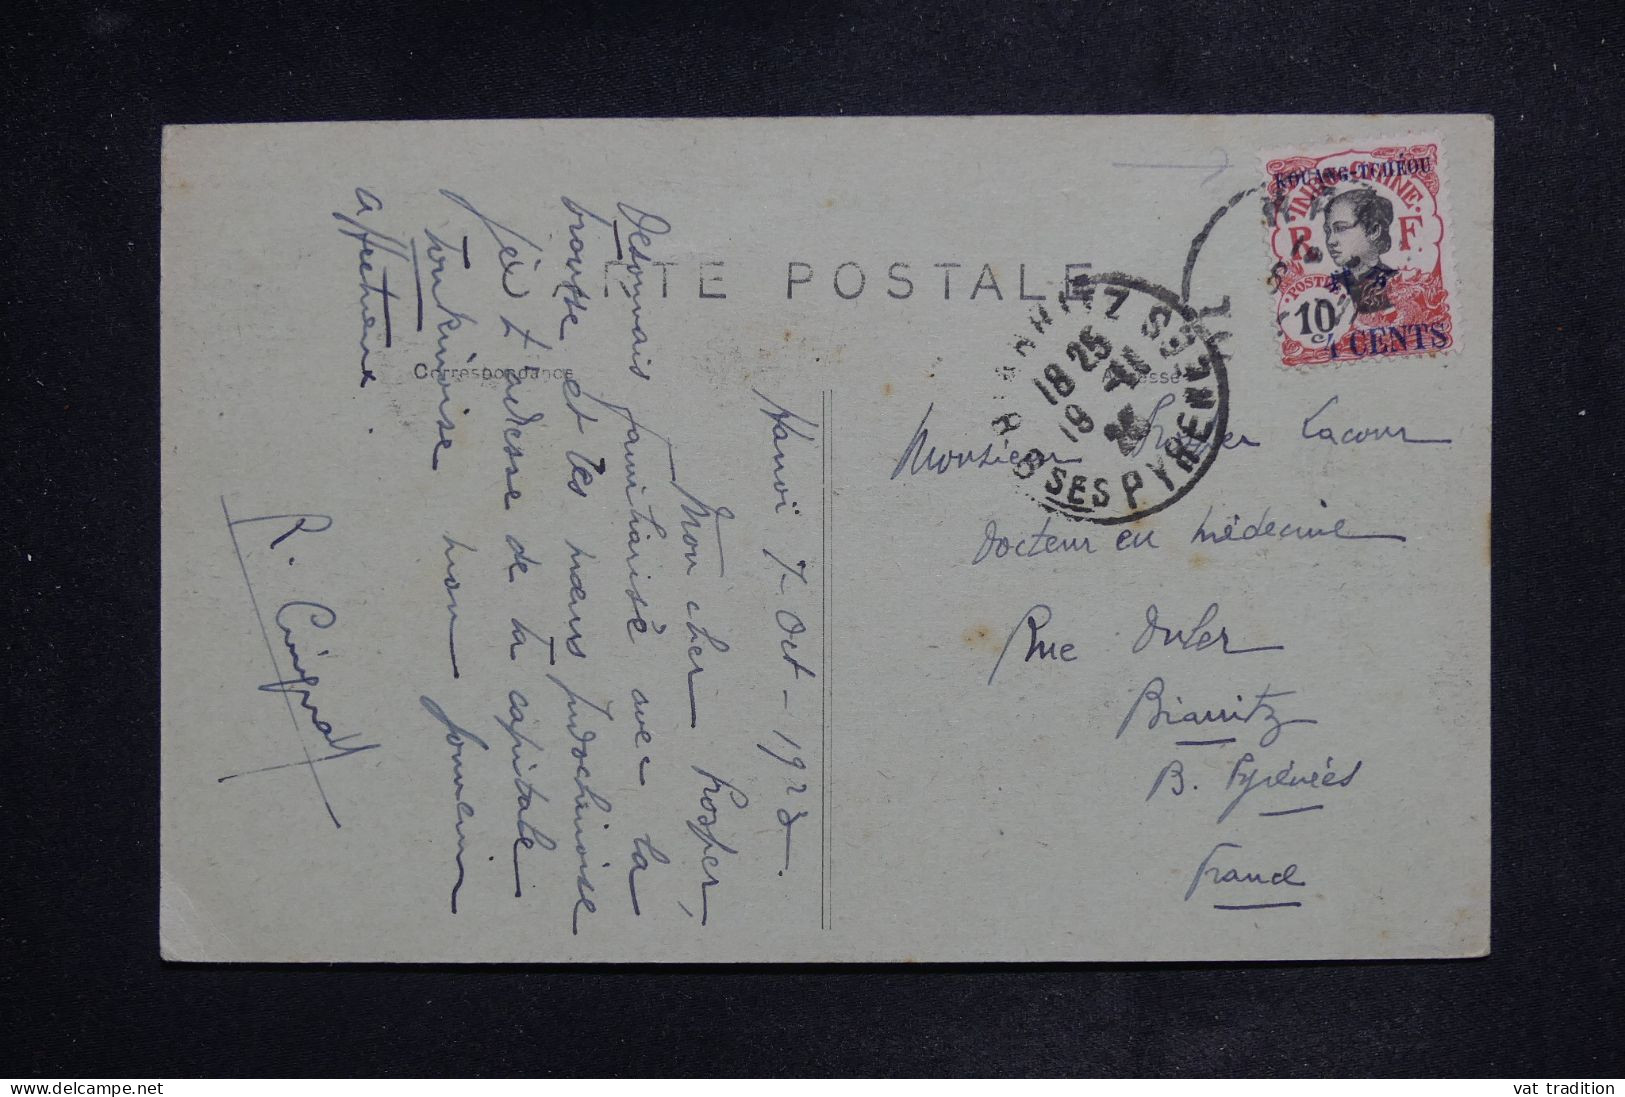 KOUANG TCHEOU - Affranchissement De Hanoi Sur Carte Postale En 1923 Pour La France  - L 150964 - Lettres & Documents